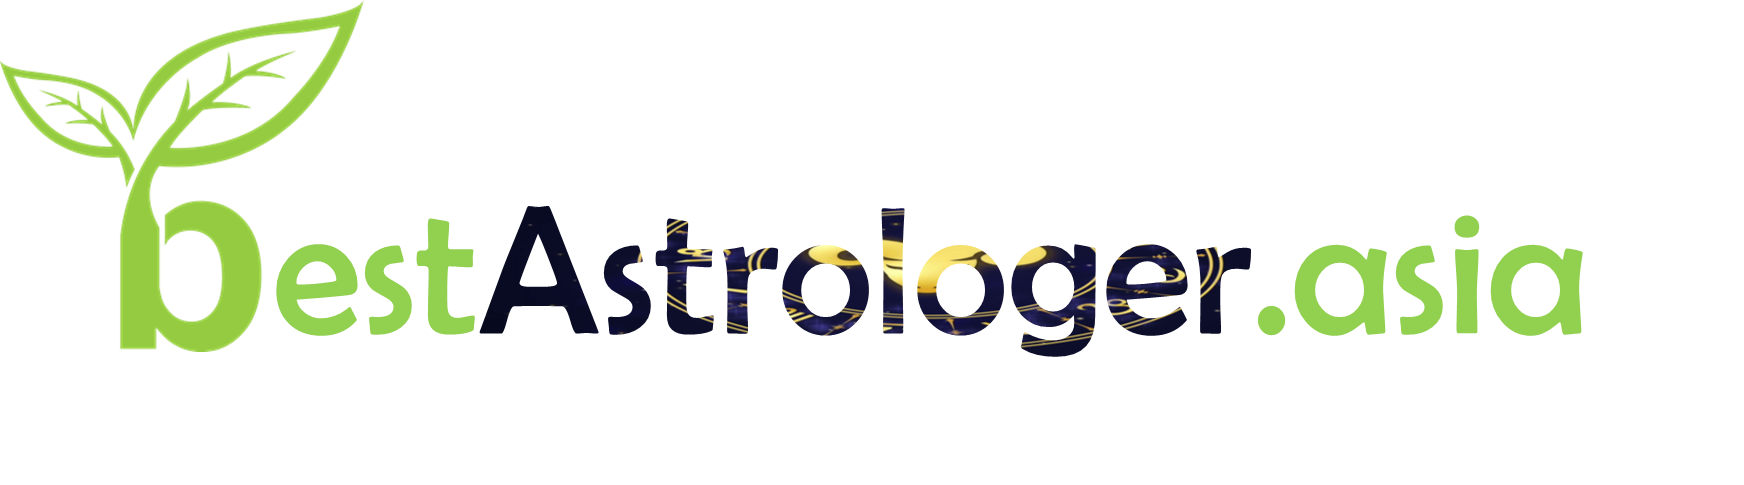 Best Astrologer Logo